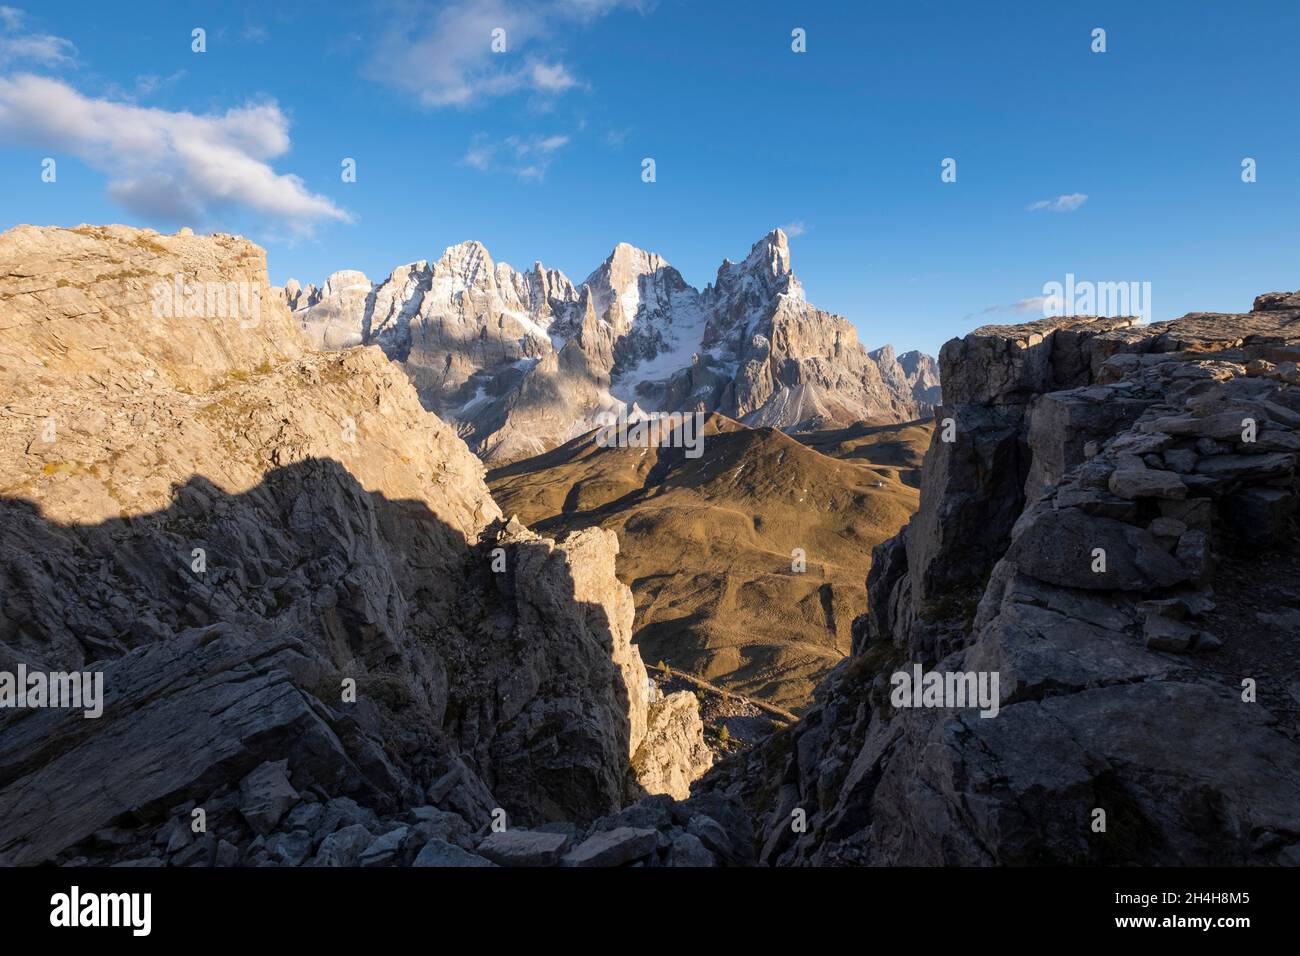 Vista dal Monte Castellaz al Cimon della pala, Gruppo pala, Parco Naturale Paneveggio pale di San Martino, Passo Rolle, Trentino, Italia Foto Stock